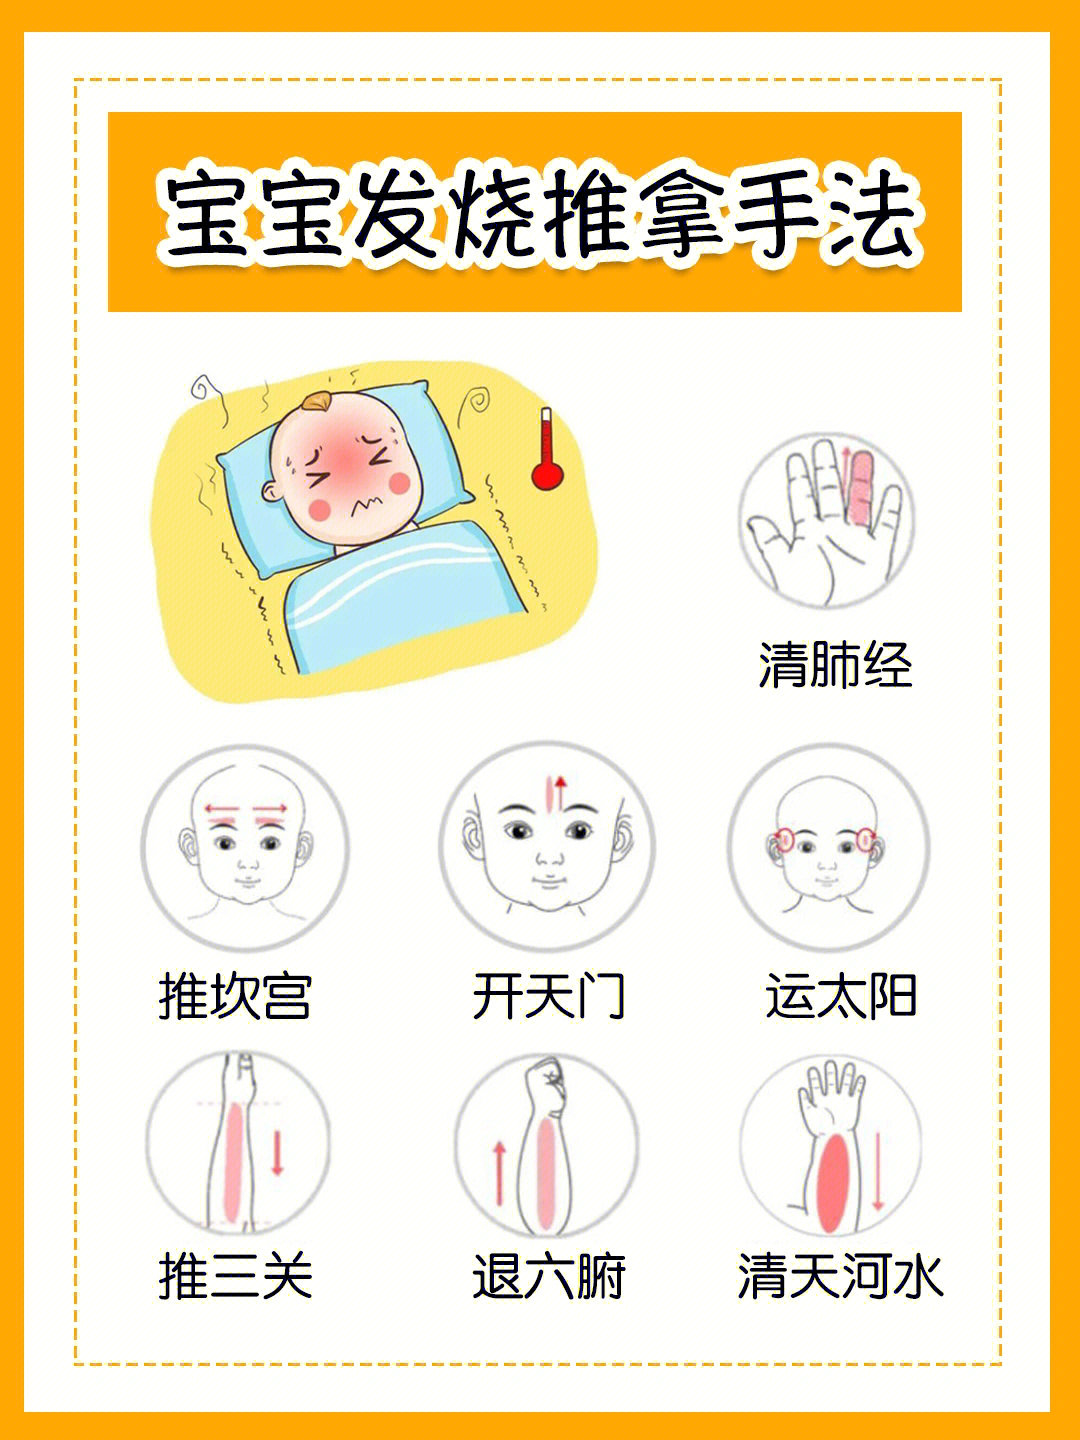 会有发烧的情况,除了及时就医吃药,可以试试用推拿帮助宝宝退烧降温